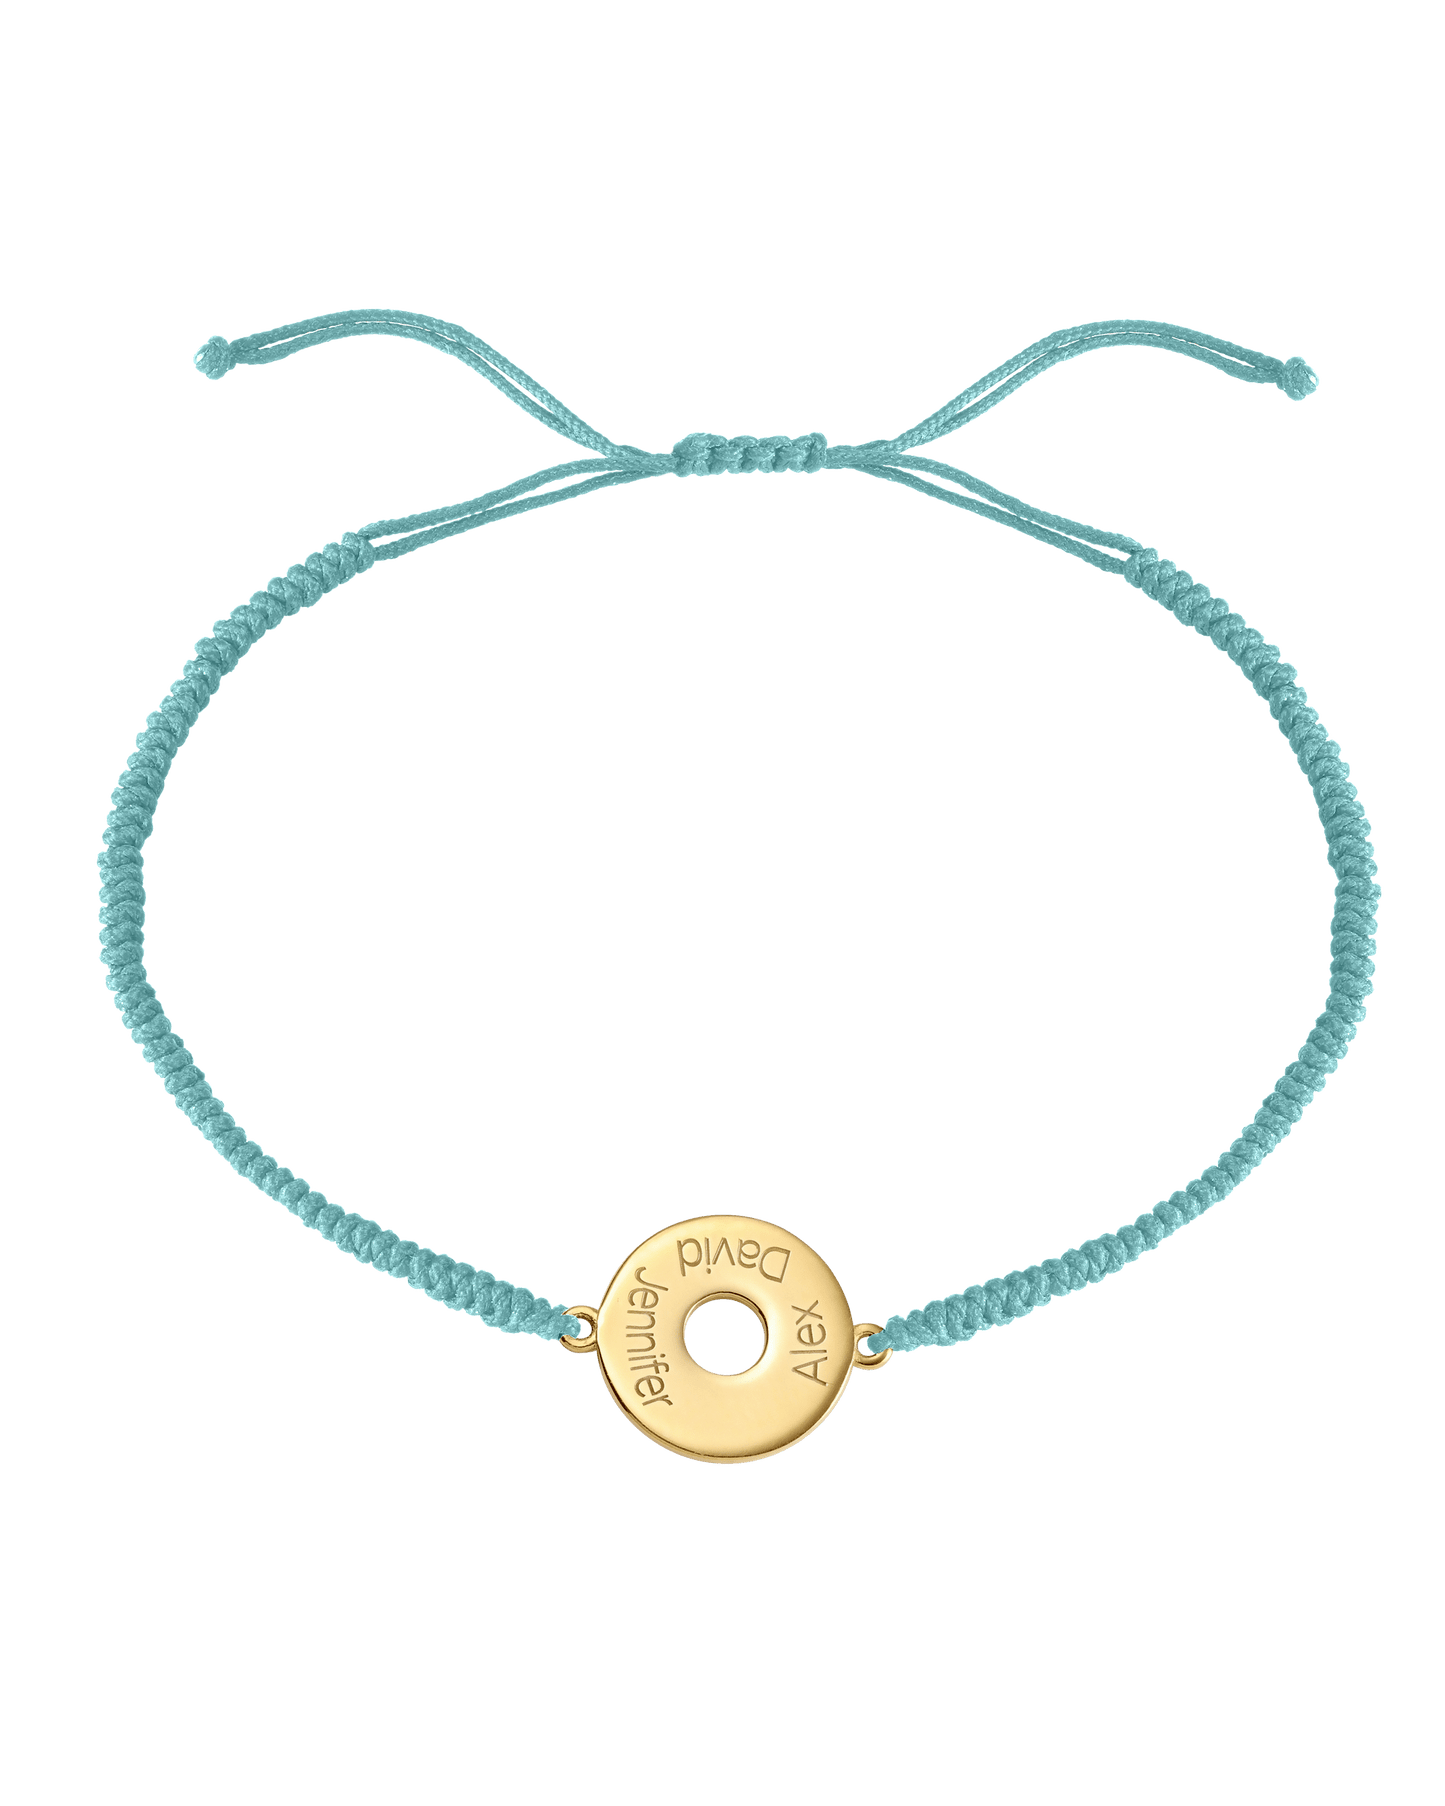 Donut Cord Bracelet - 18K Gold Vermeil Bracelets magal-dev Turquoise 1 Name Adjustable from 4" to 9"